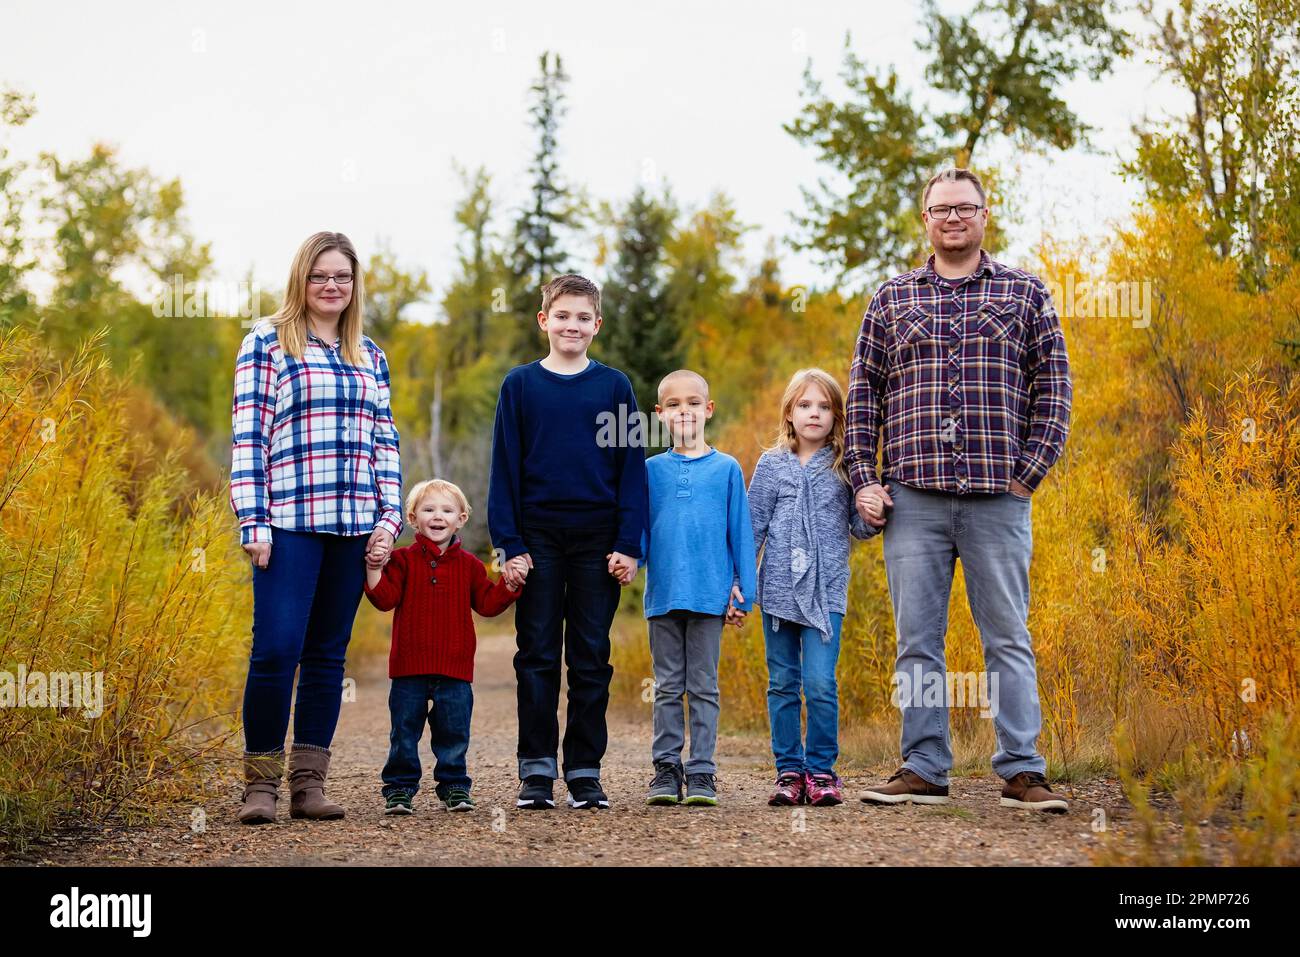 Famiglia di sei persone in piedi insieme mano nella mano in un parco in autunno; Edmonton, Alberta, Canada Foto Stock